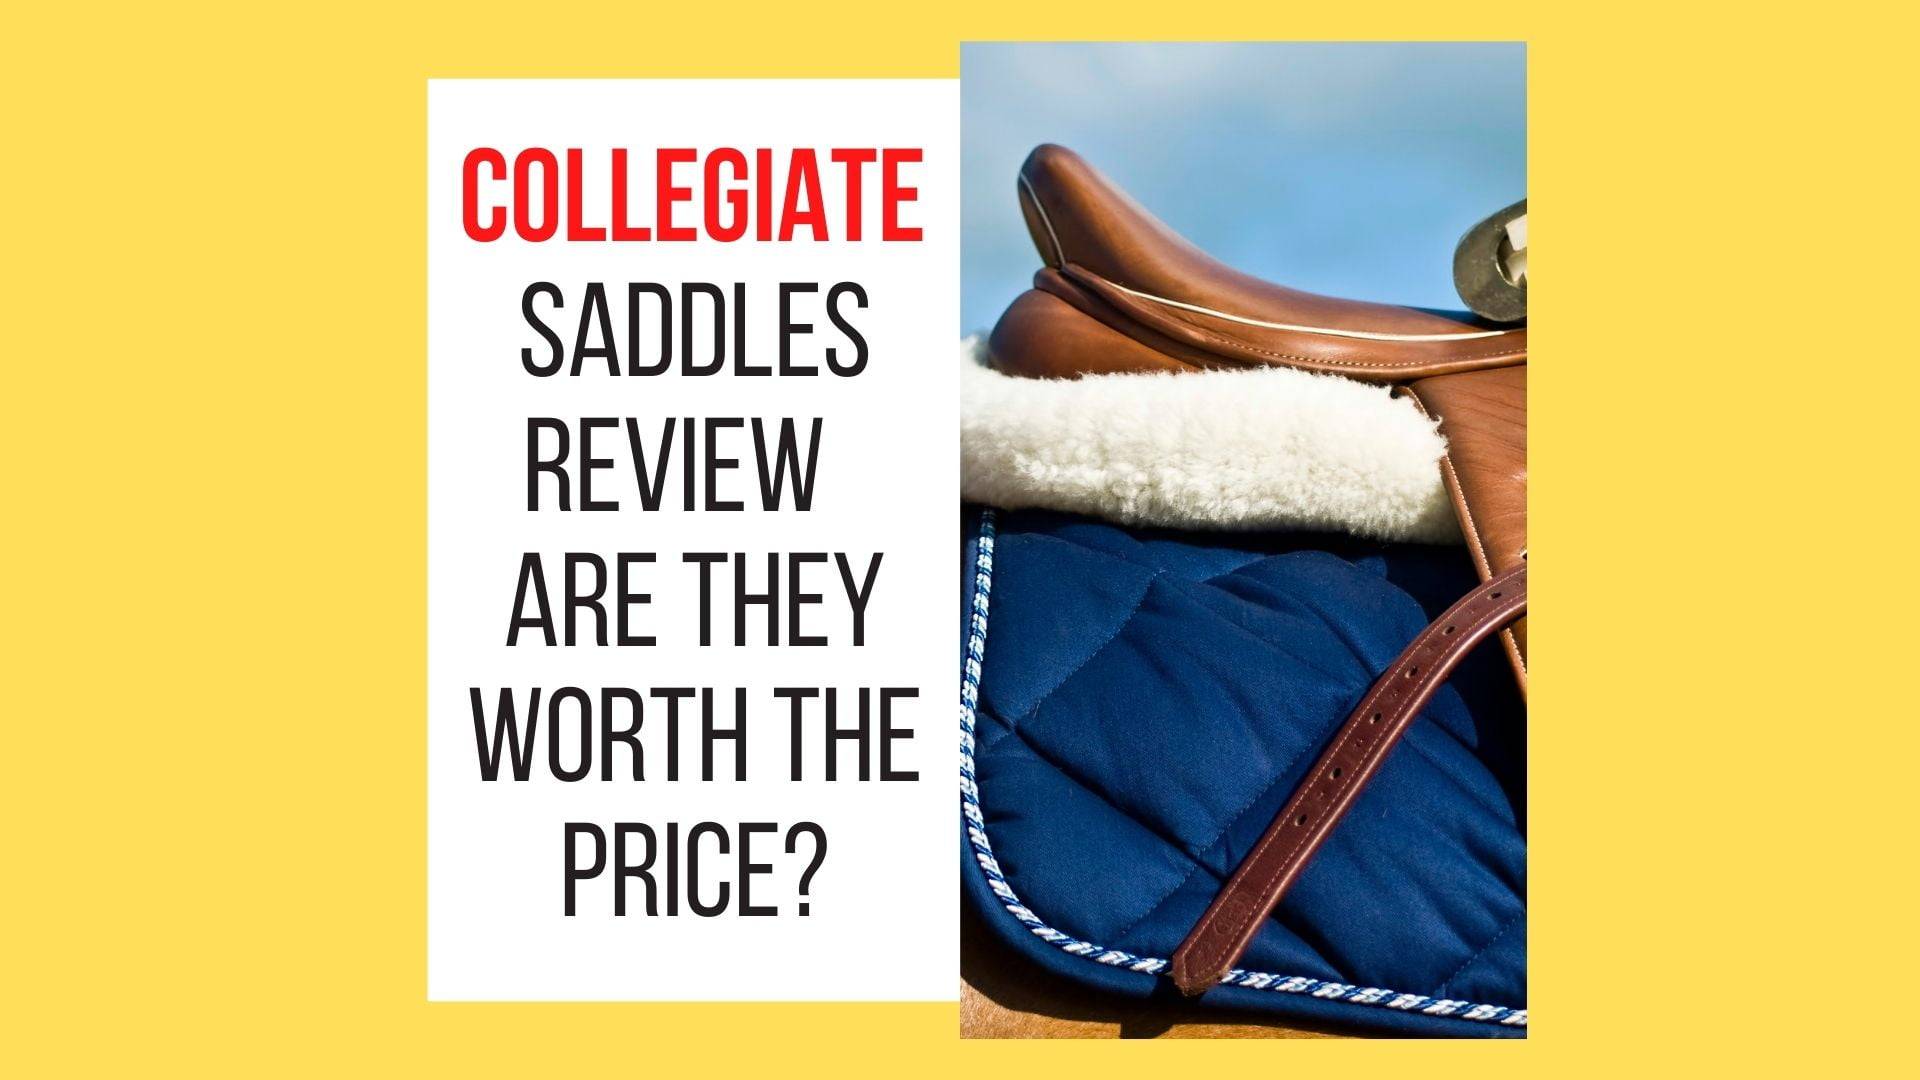 Collegiate Saddles Review